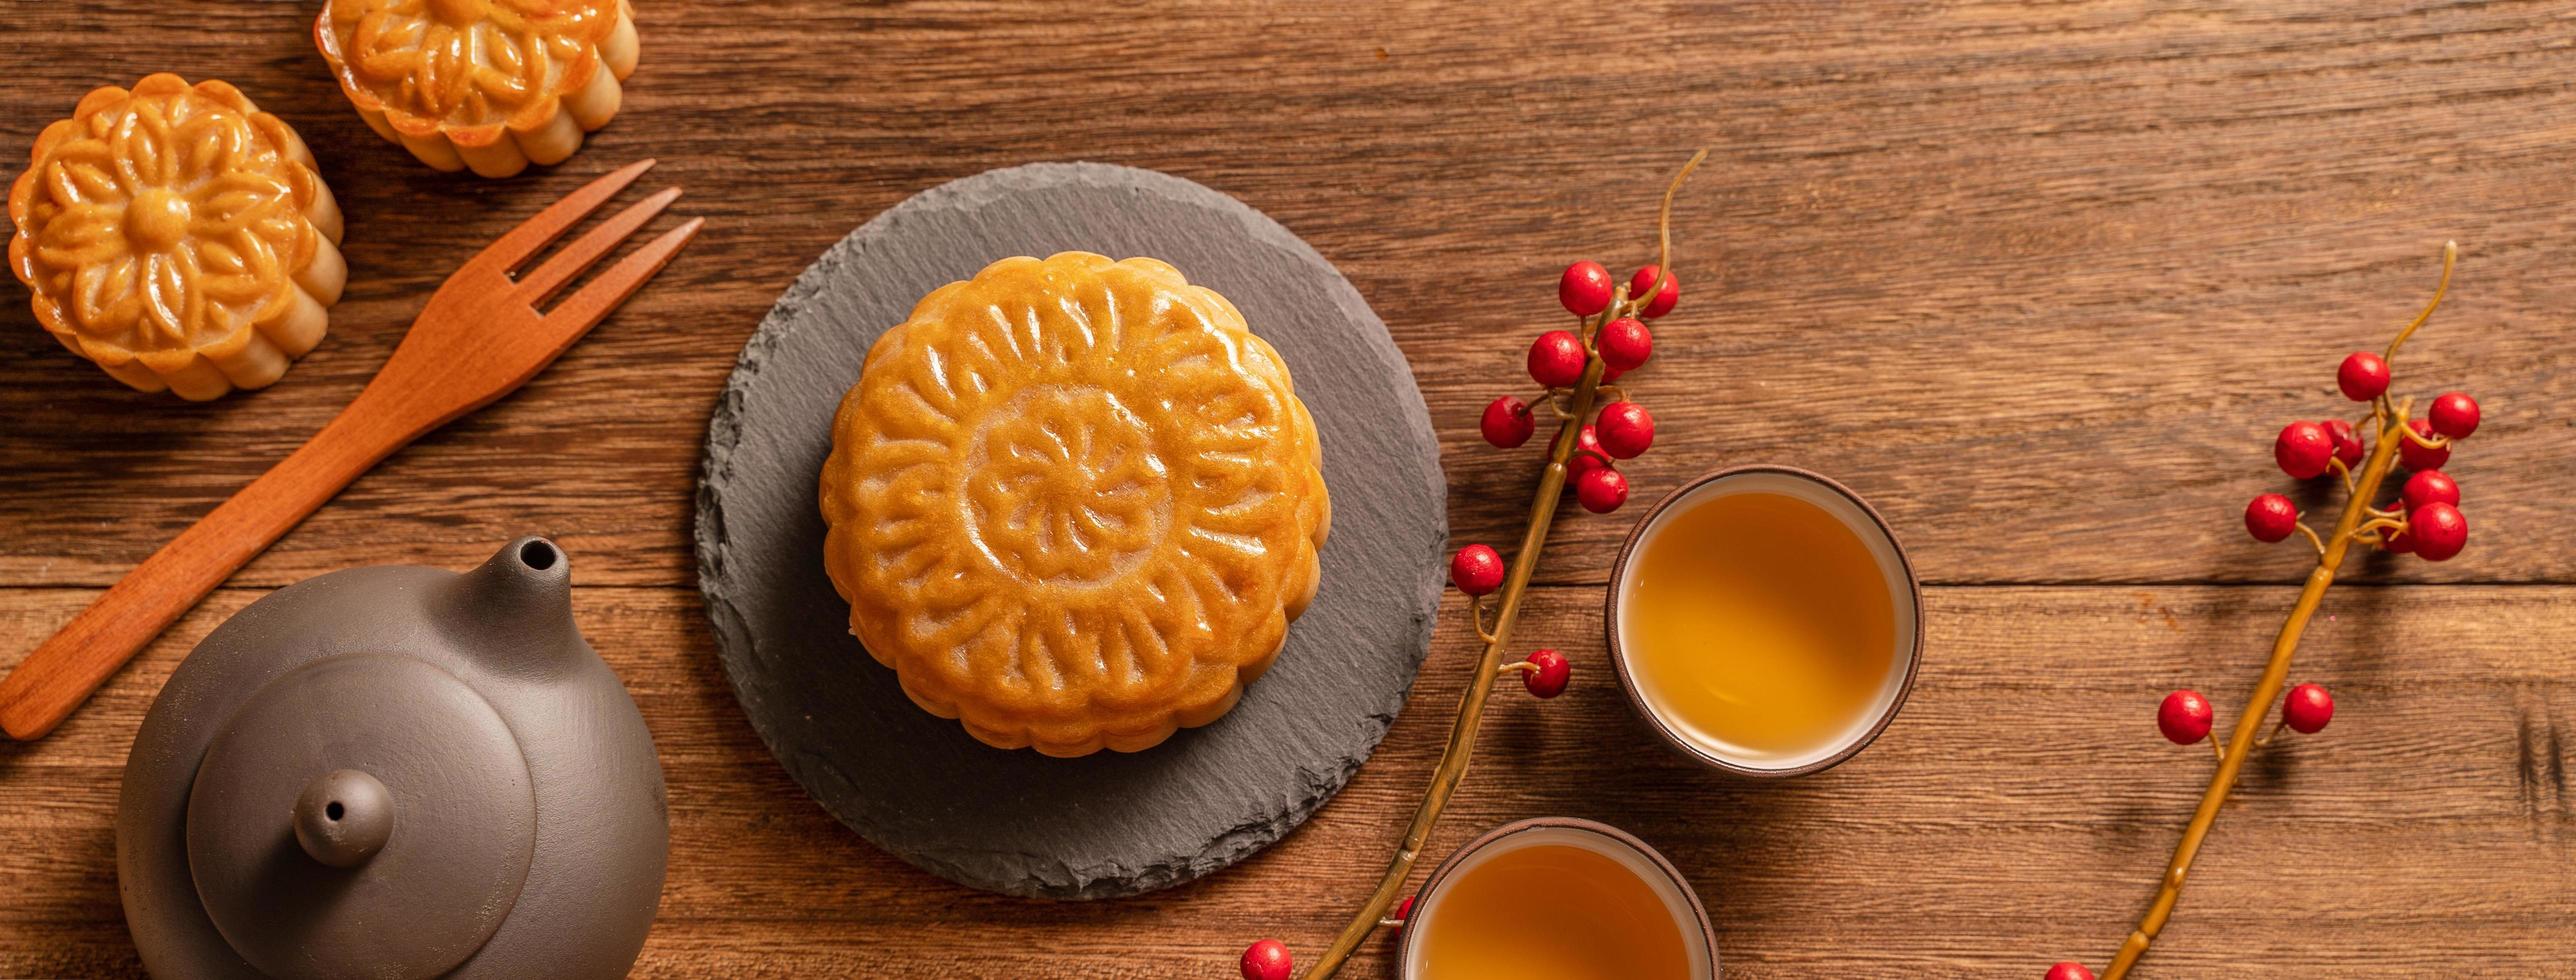 bolo de lua configuração de mesa de bolo de lua - pastelaria tradicional chinesa com xícaras de chá em fundo de madeira, conceito de festival de meio outono, vista superior, configuração plana. foto